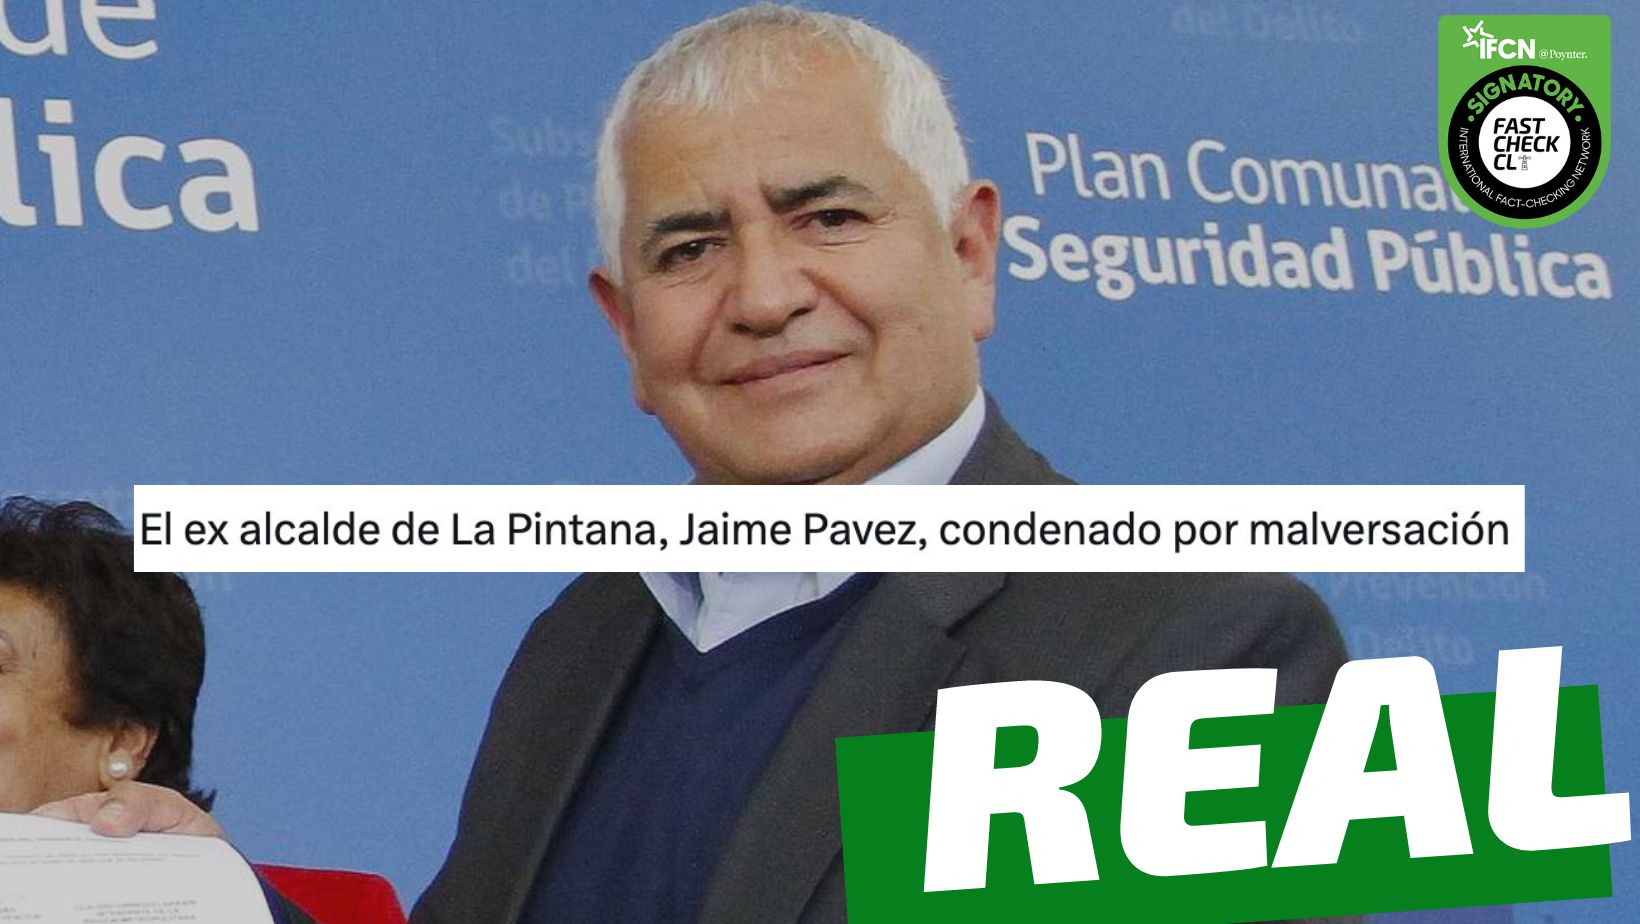 You are currently viewing “El exalcalde de La Pintana, Jaime Pavez, condenado por malversaci贸n”: #Real